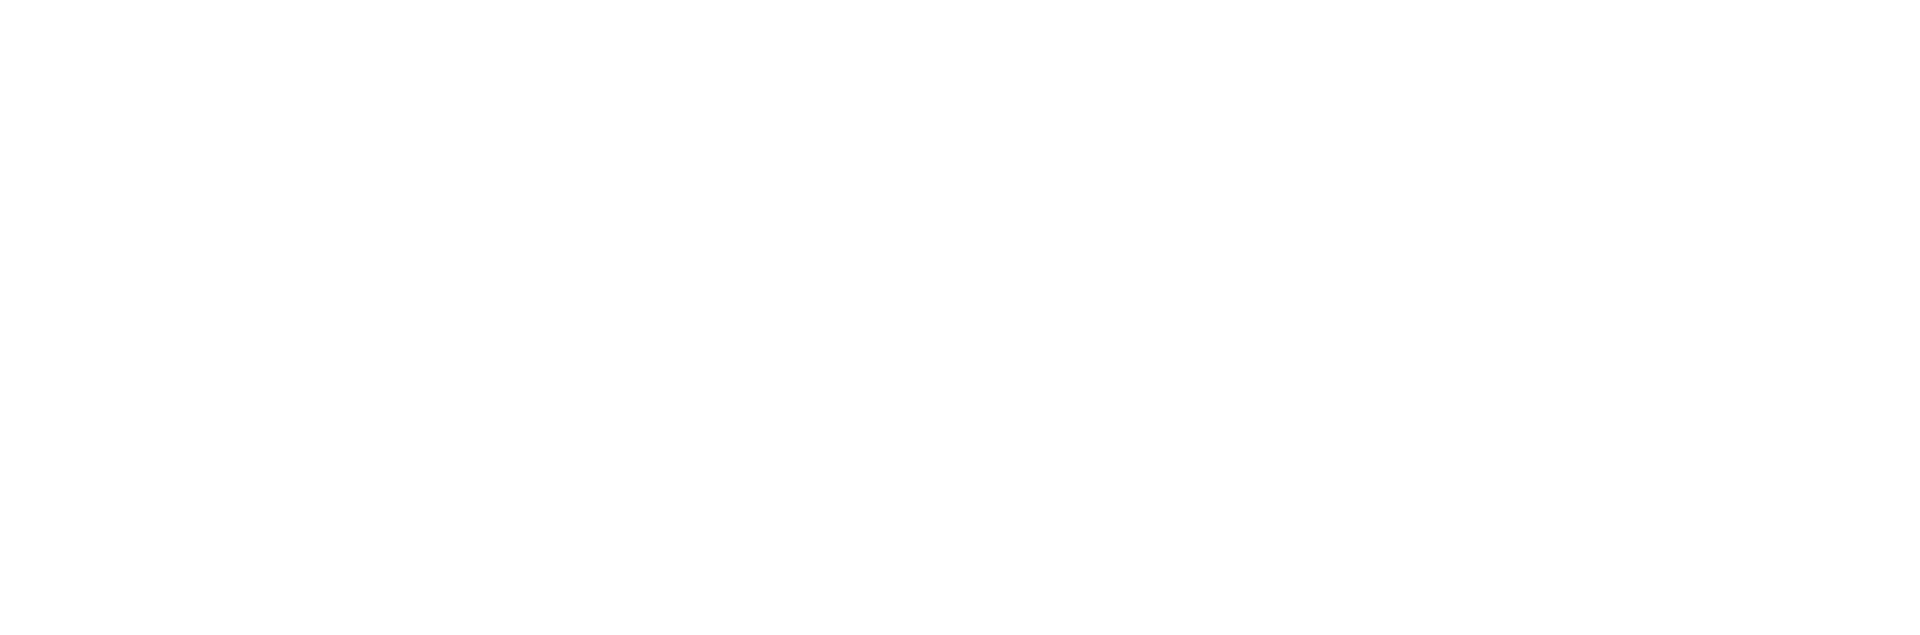 botanical print for herbalism school